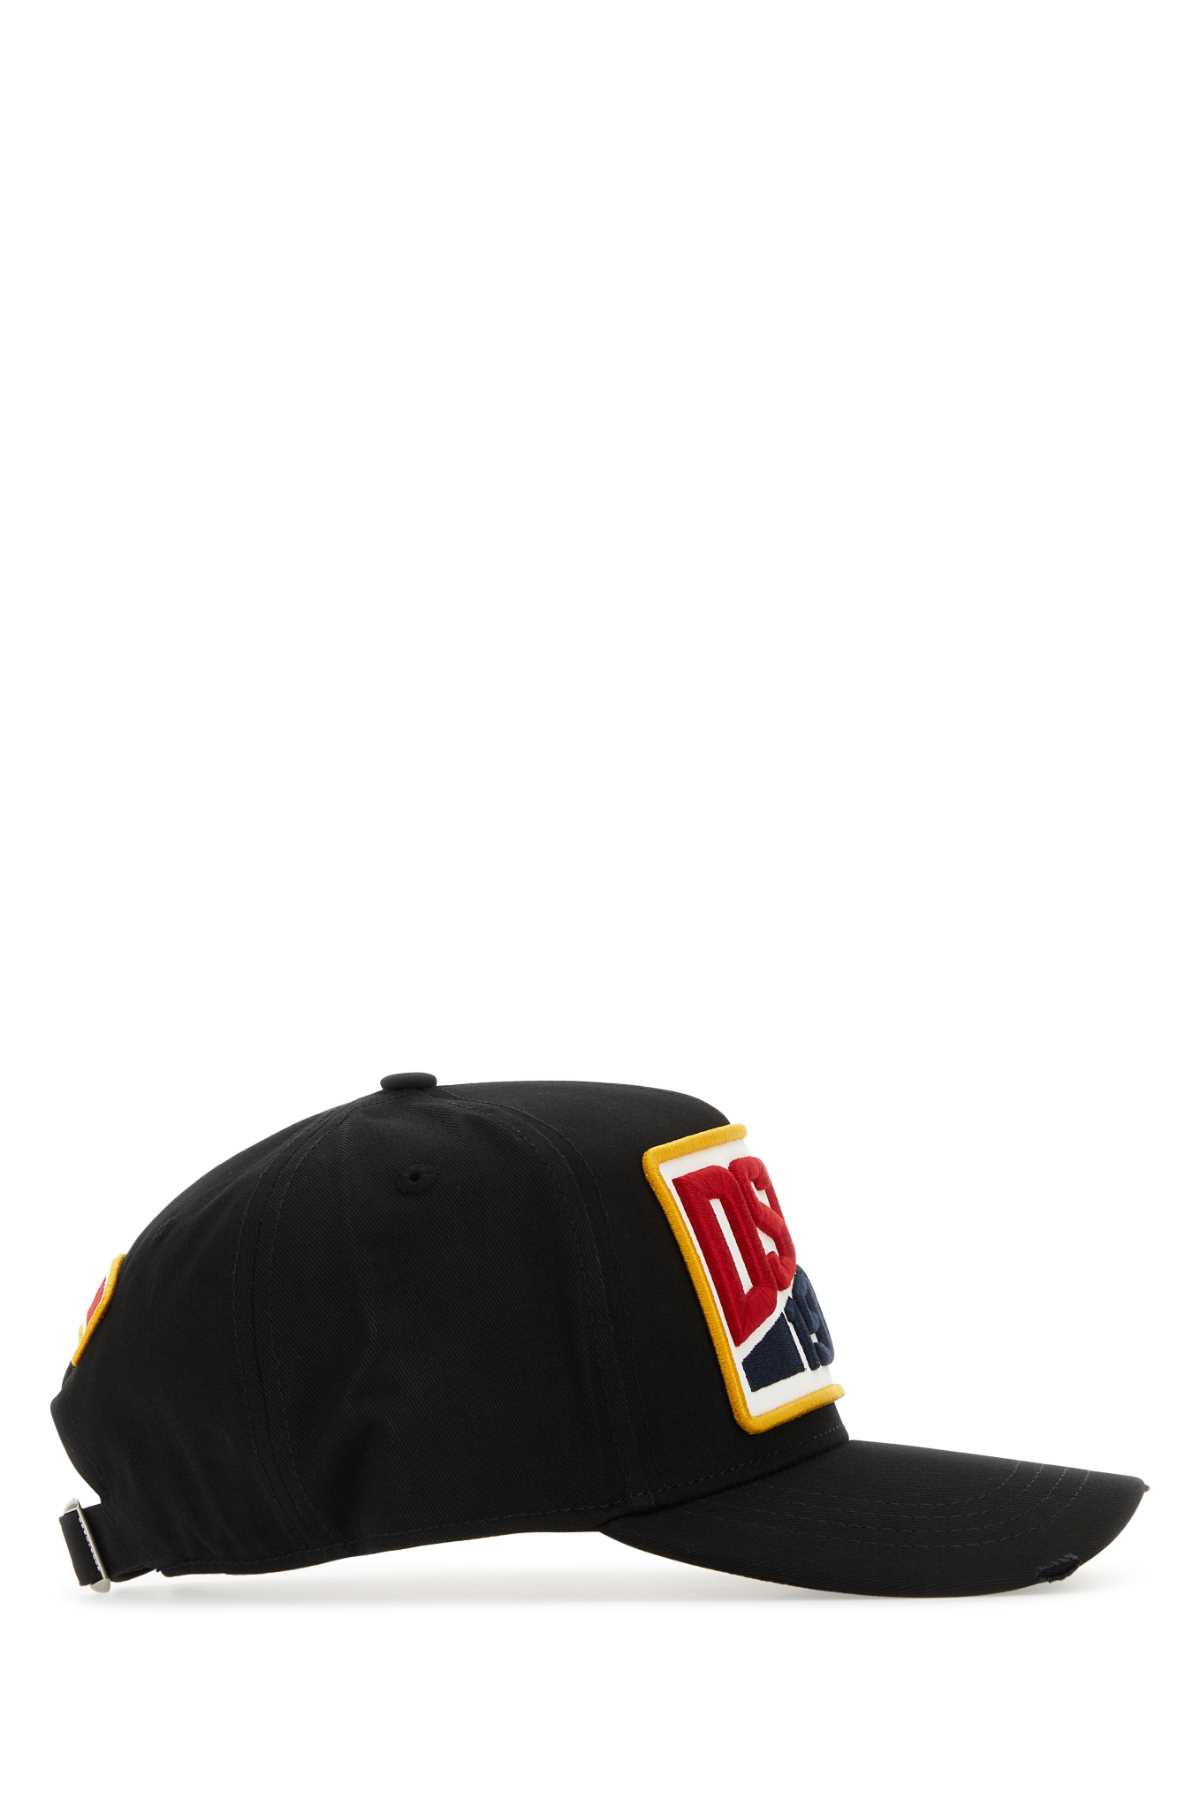 Dsquared2 Black Cotton Baseball Cap